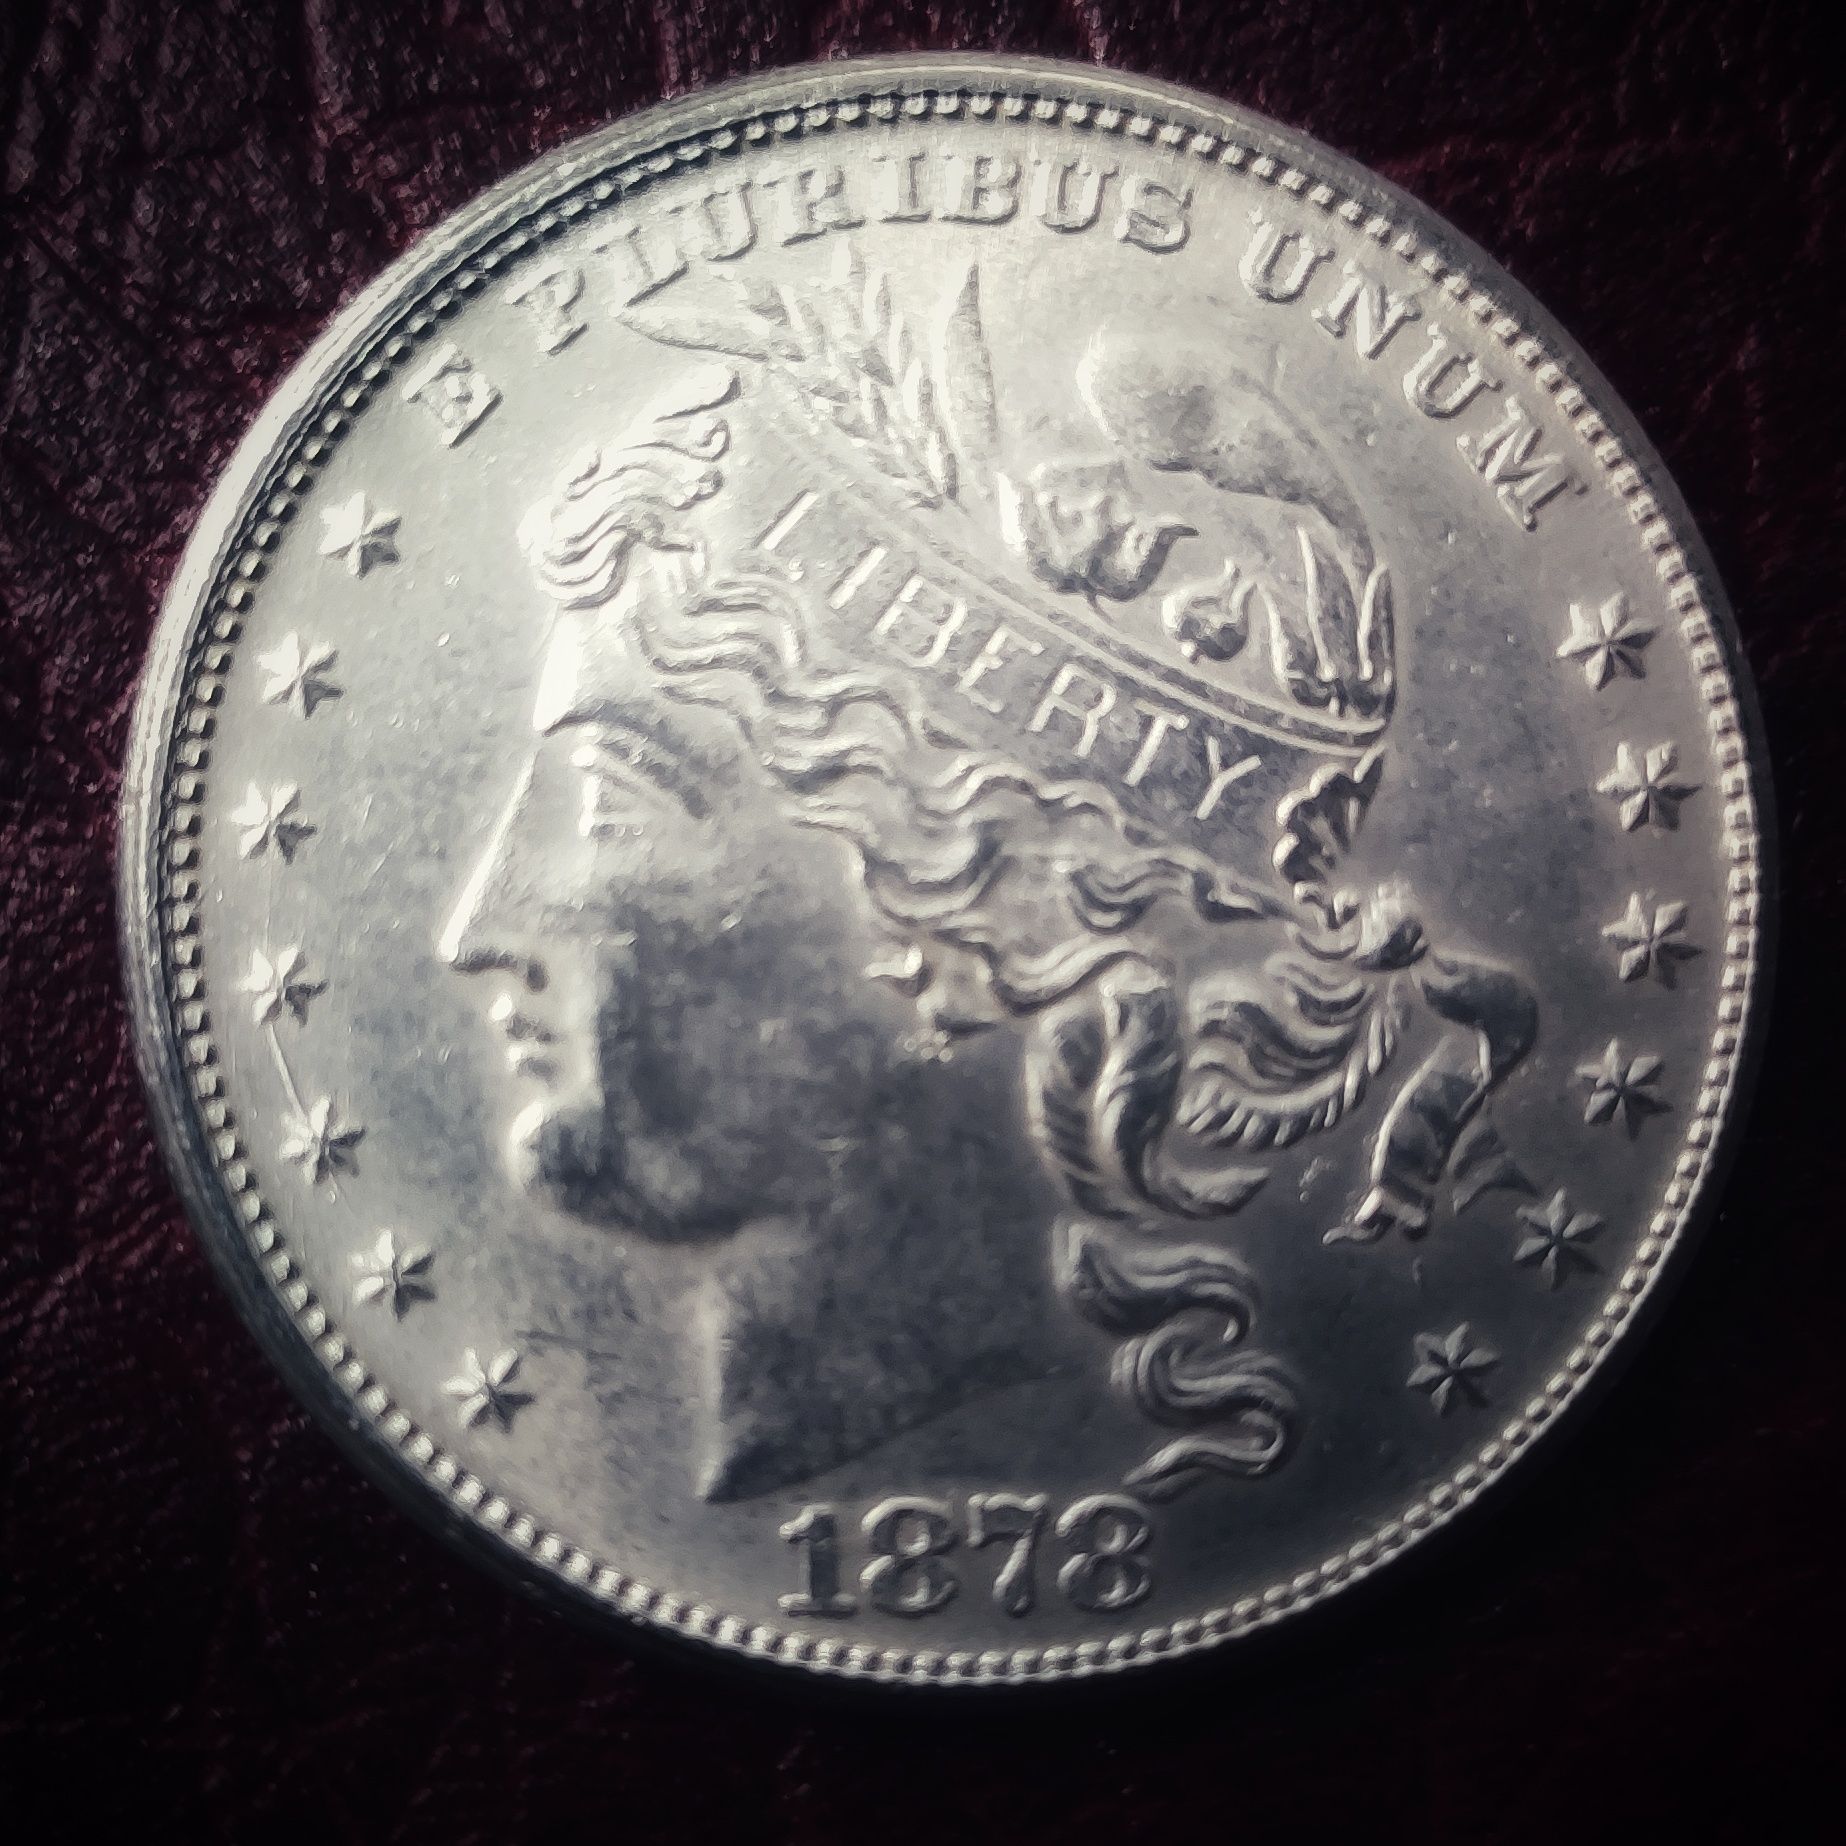 1 dolar,/100 centów 1878 roku. Liberty USA